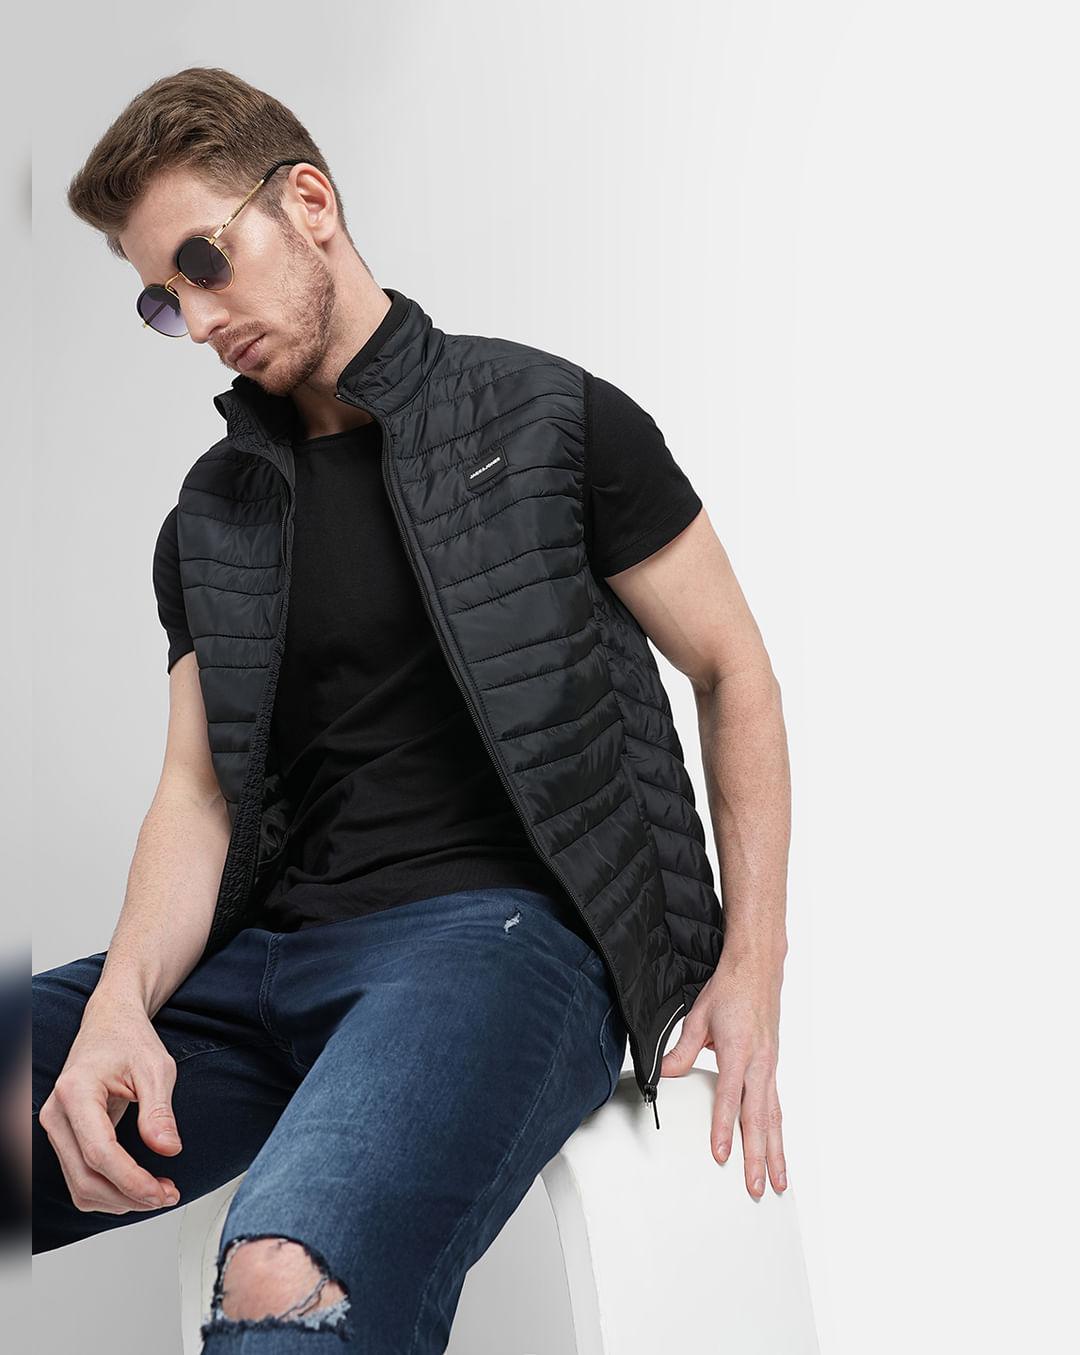 black zip-up body warmer vest